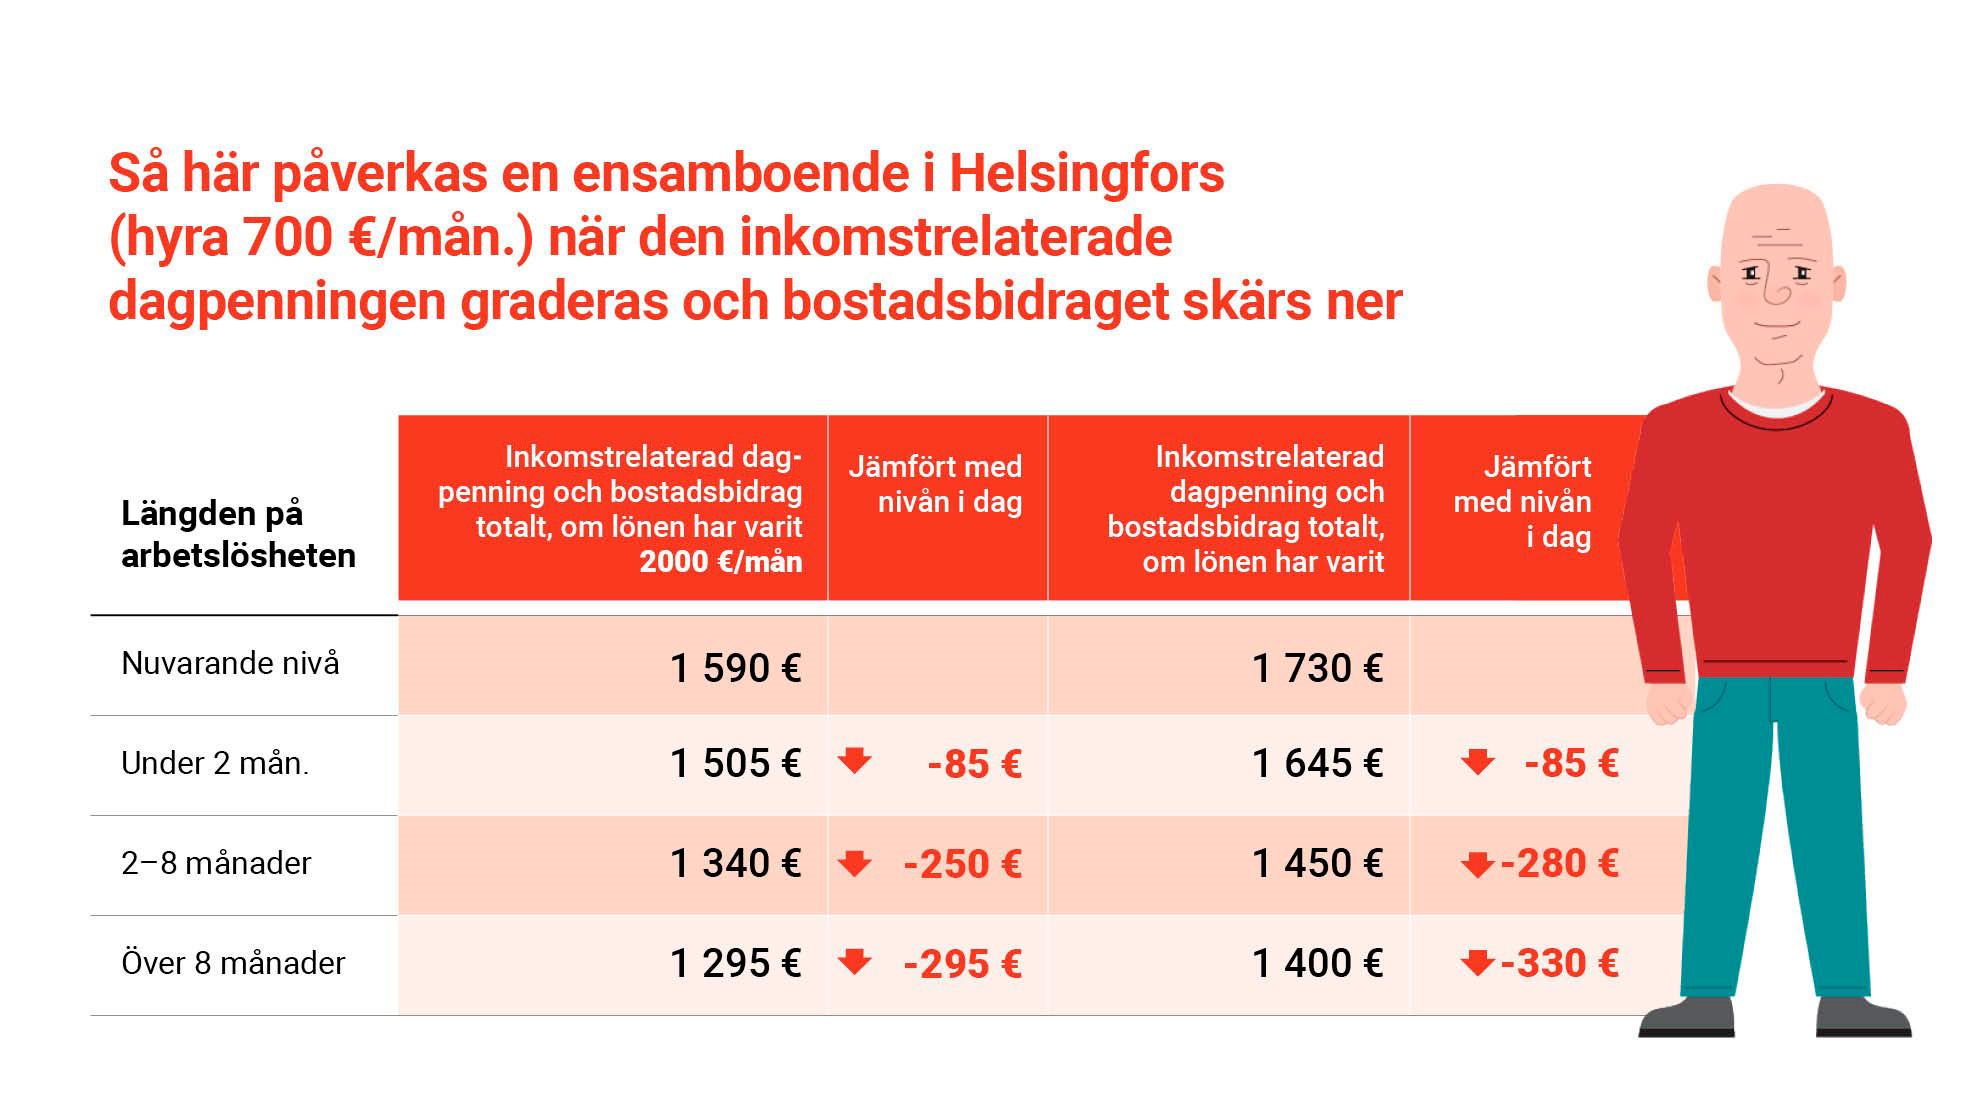 Så här påverkas en ensamboende i Helsingfors (hyra 700 €/mån.) när den inkomstrelaterade dagpenningen graderas och bostadsbidraget skärs ner